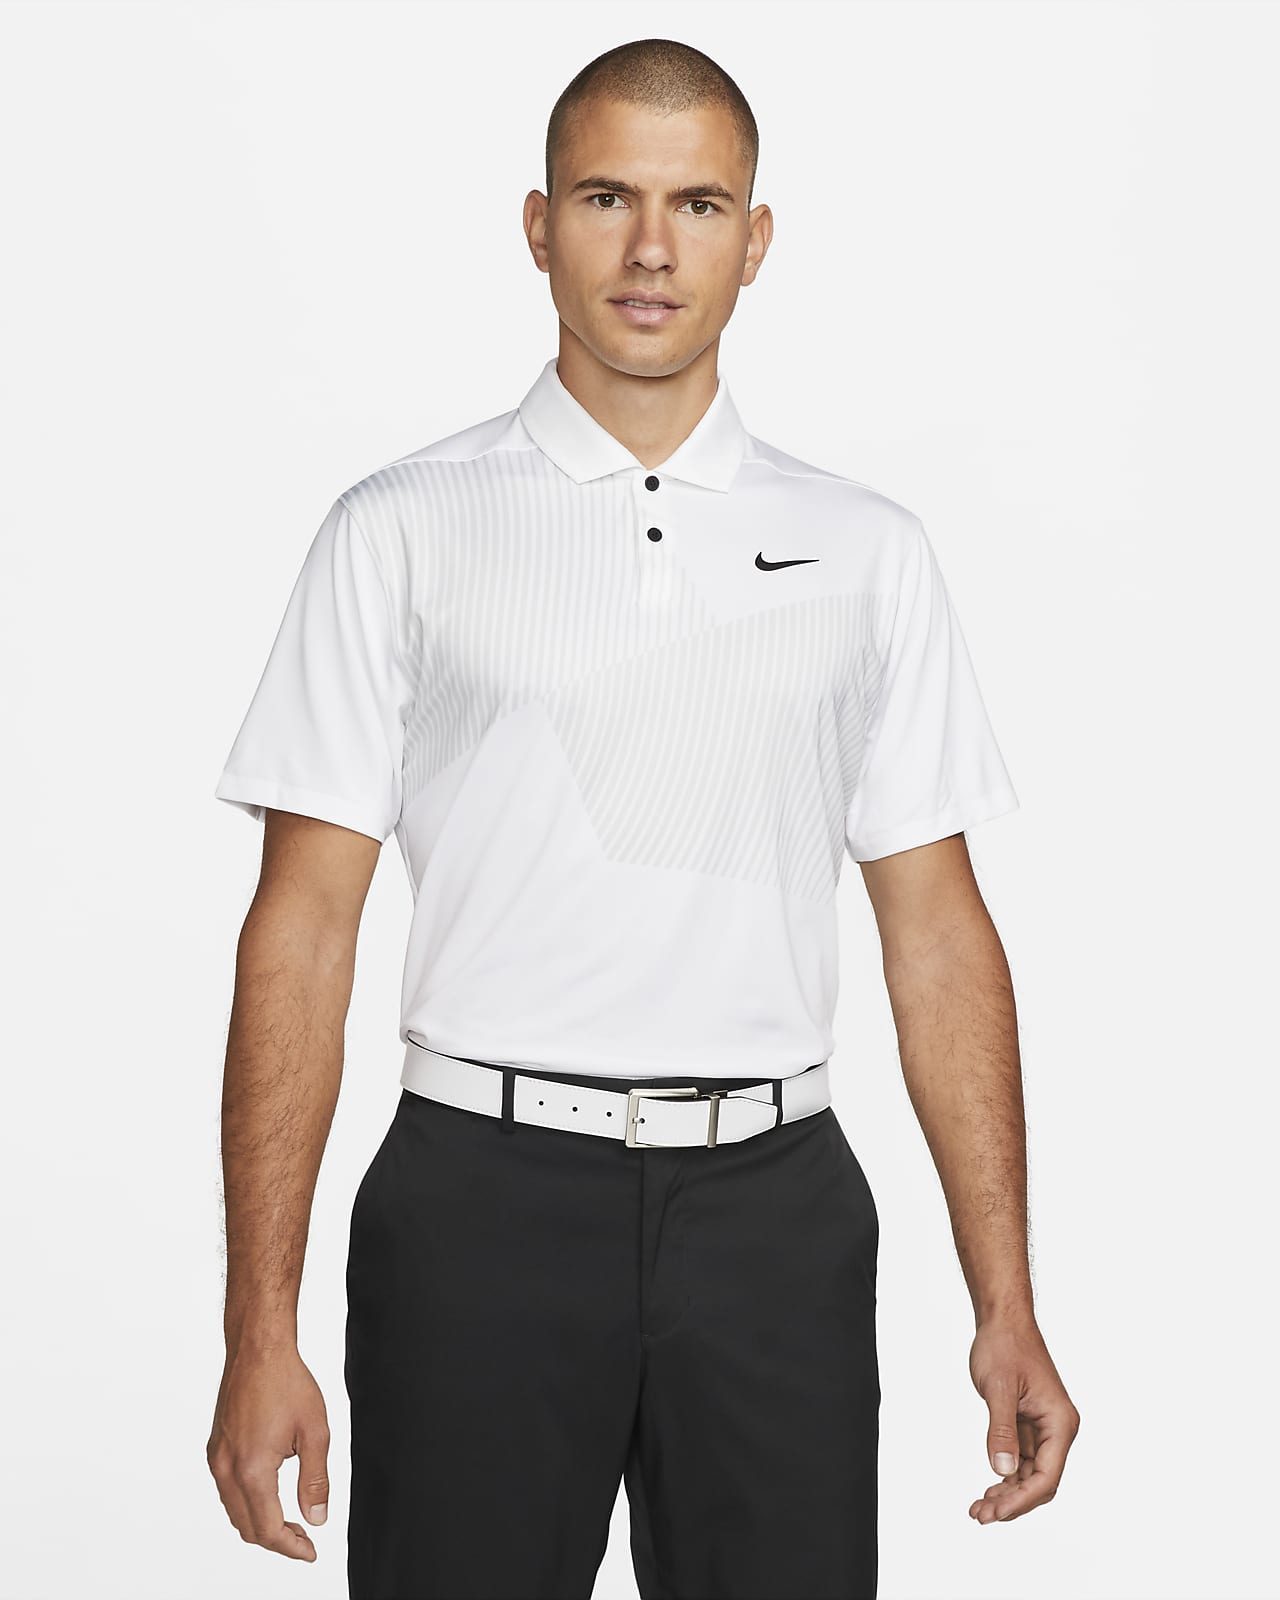 Nike Dri-FIT Vapor mintás férfi golfpóló